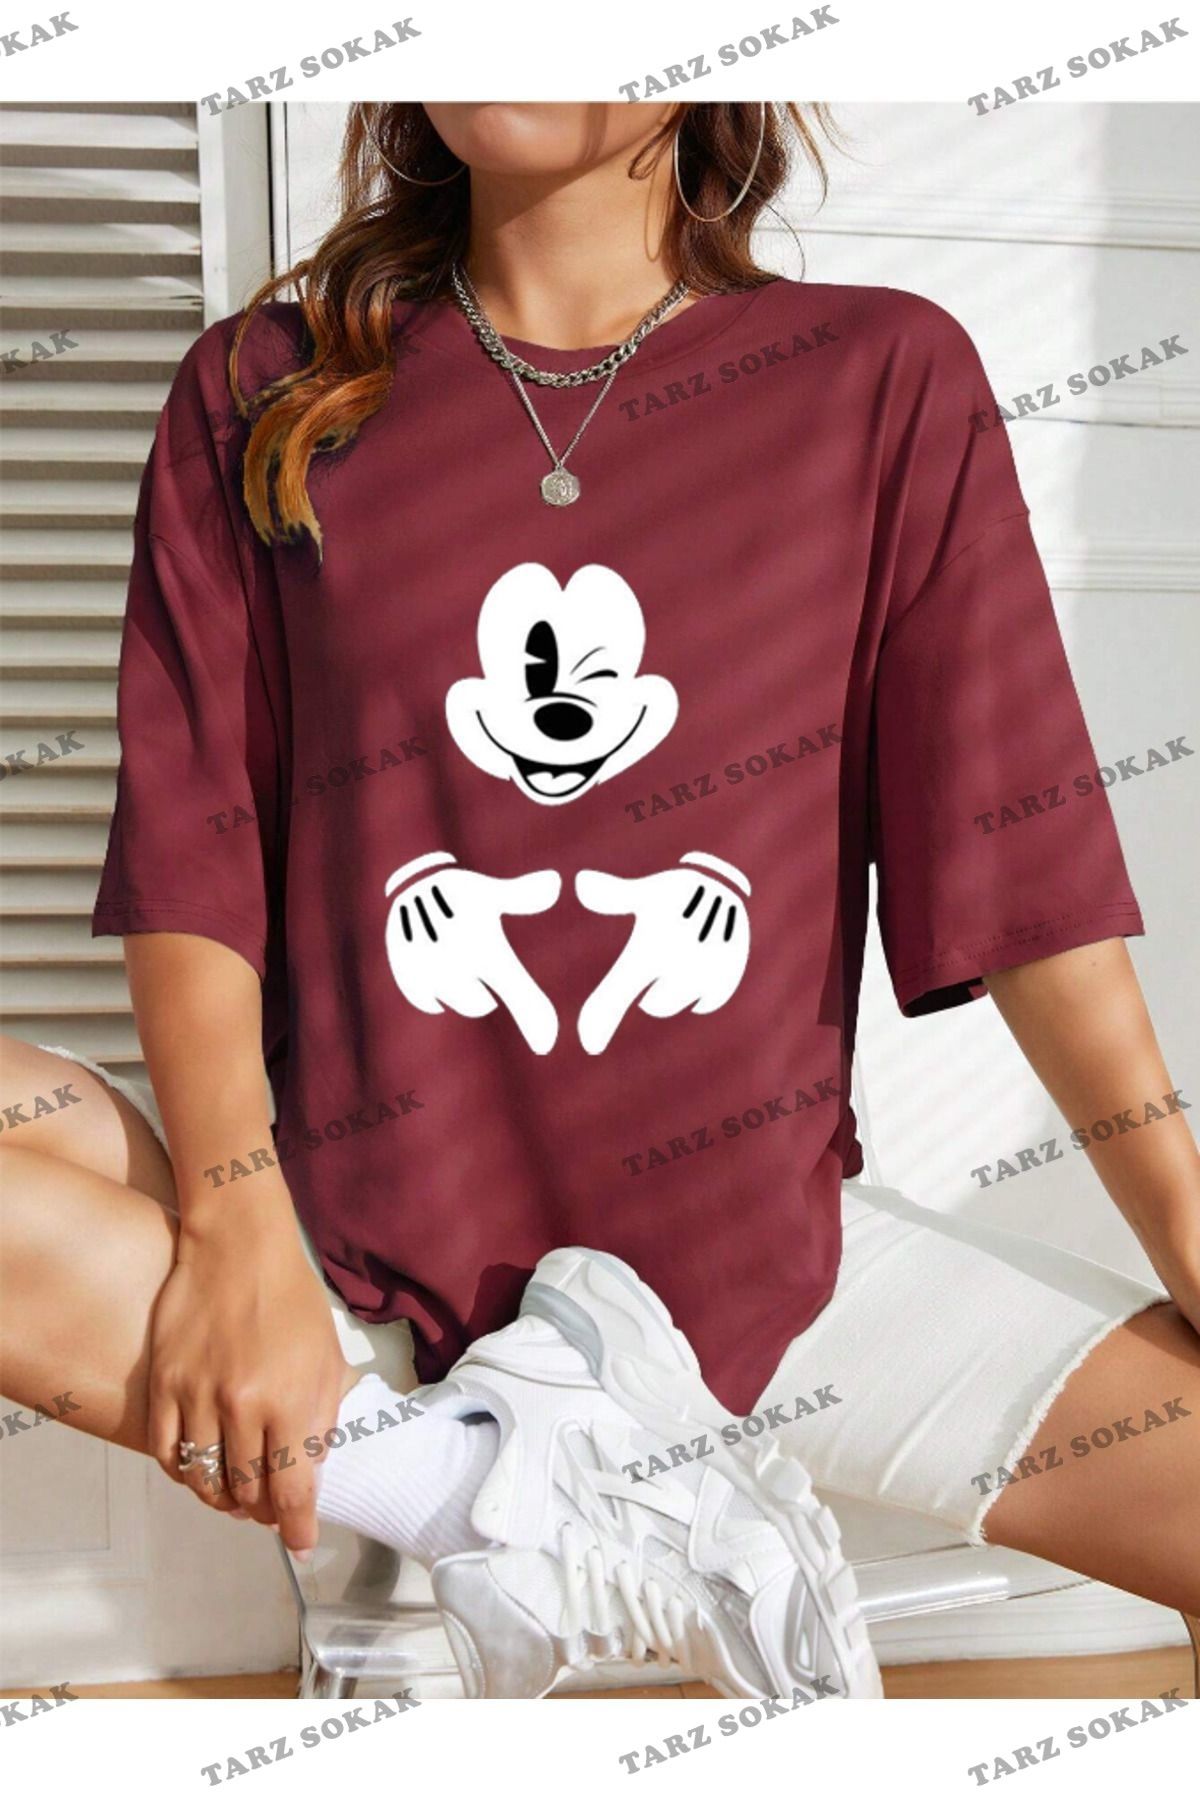 Tarzsokak Unisex Kadın/Erkek Mickey Mouse Renkli Özel Baskılı Oversize Pamuk Penye